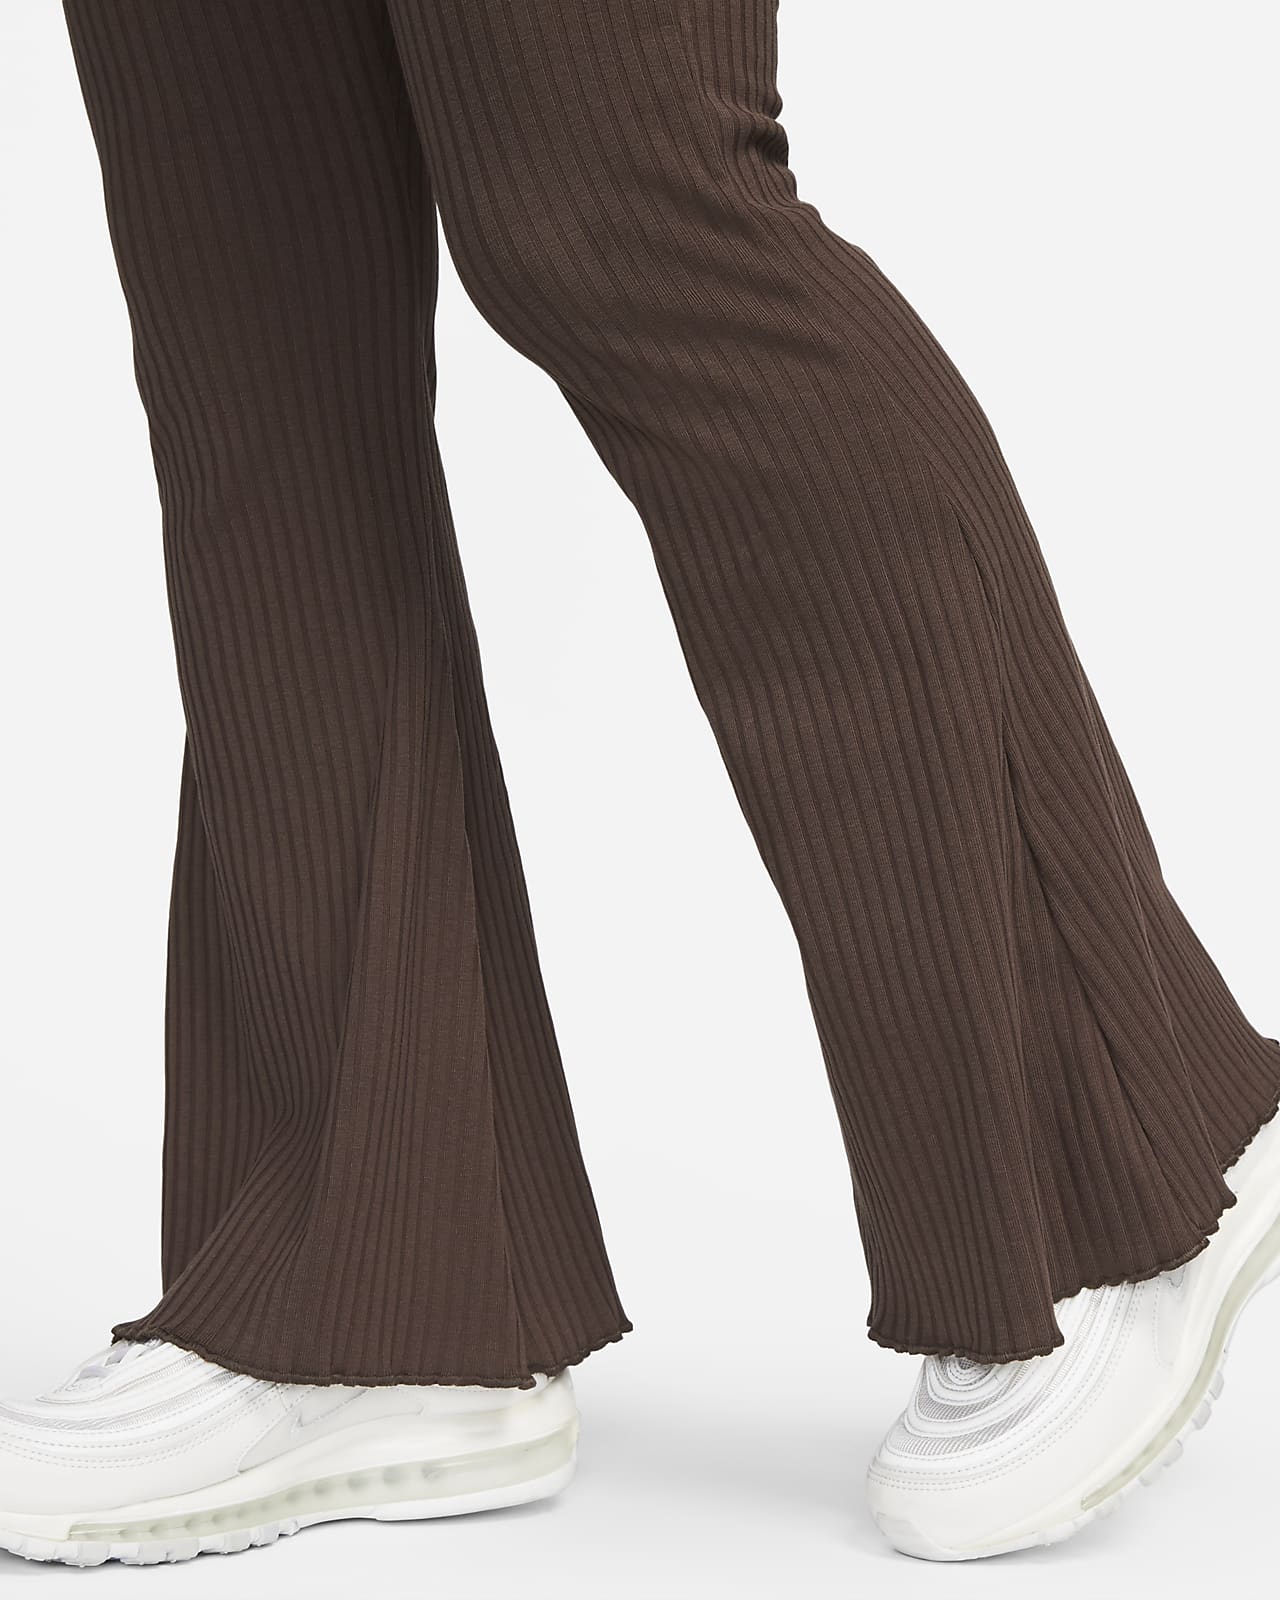 Women Trousers Jersey  Buy Women Trousers Jersey online in India